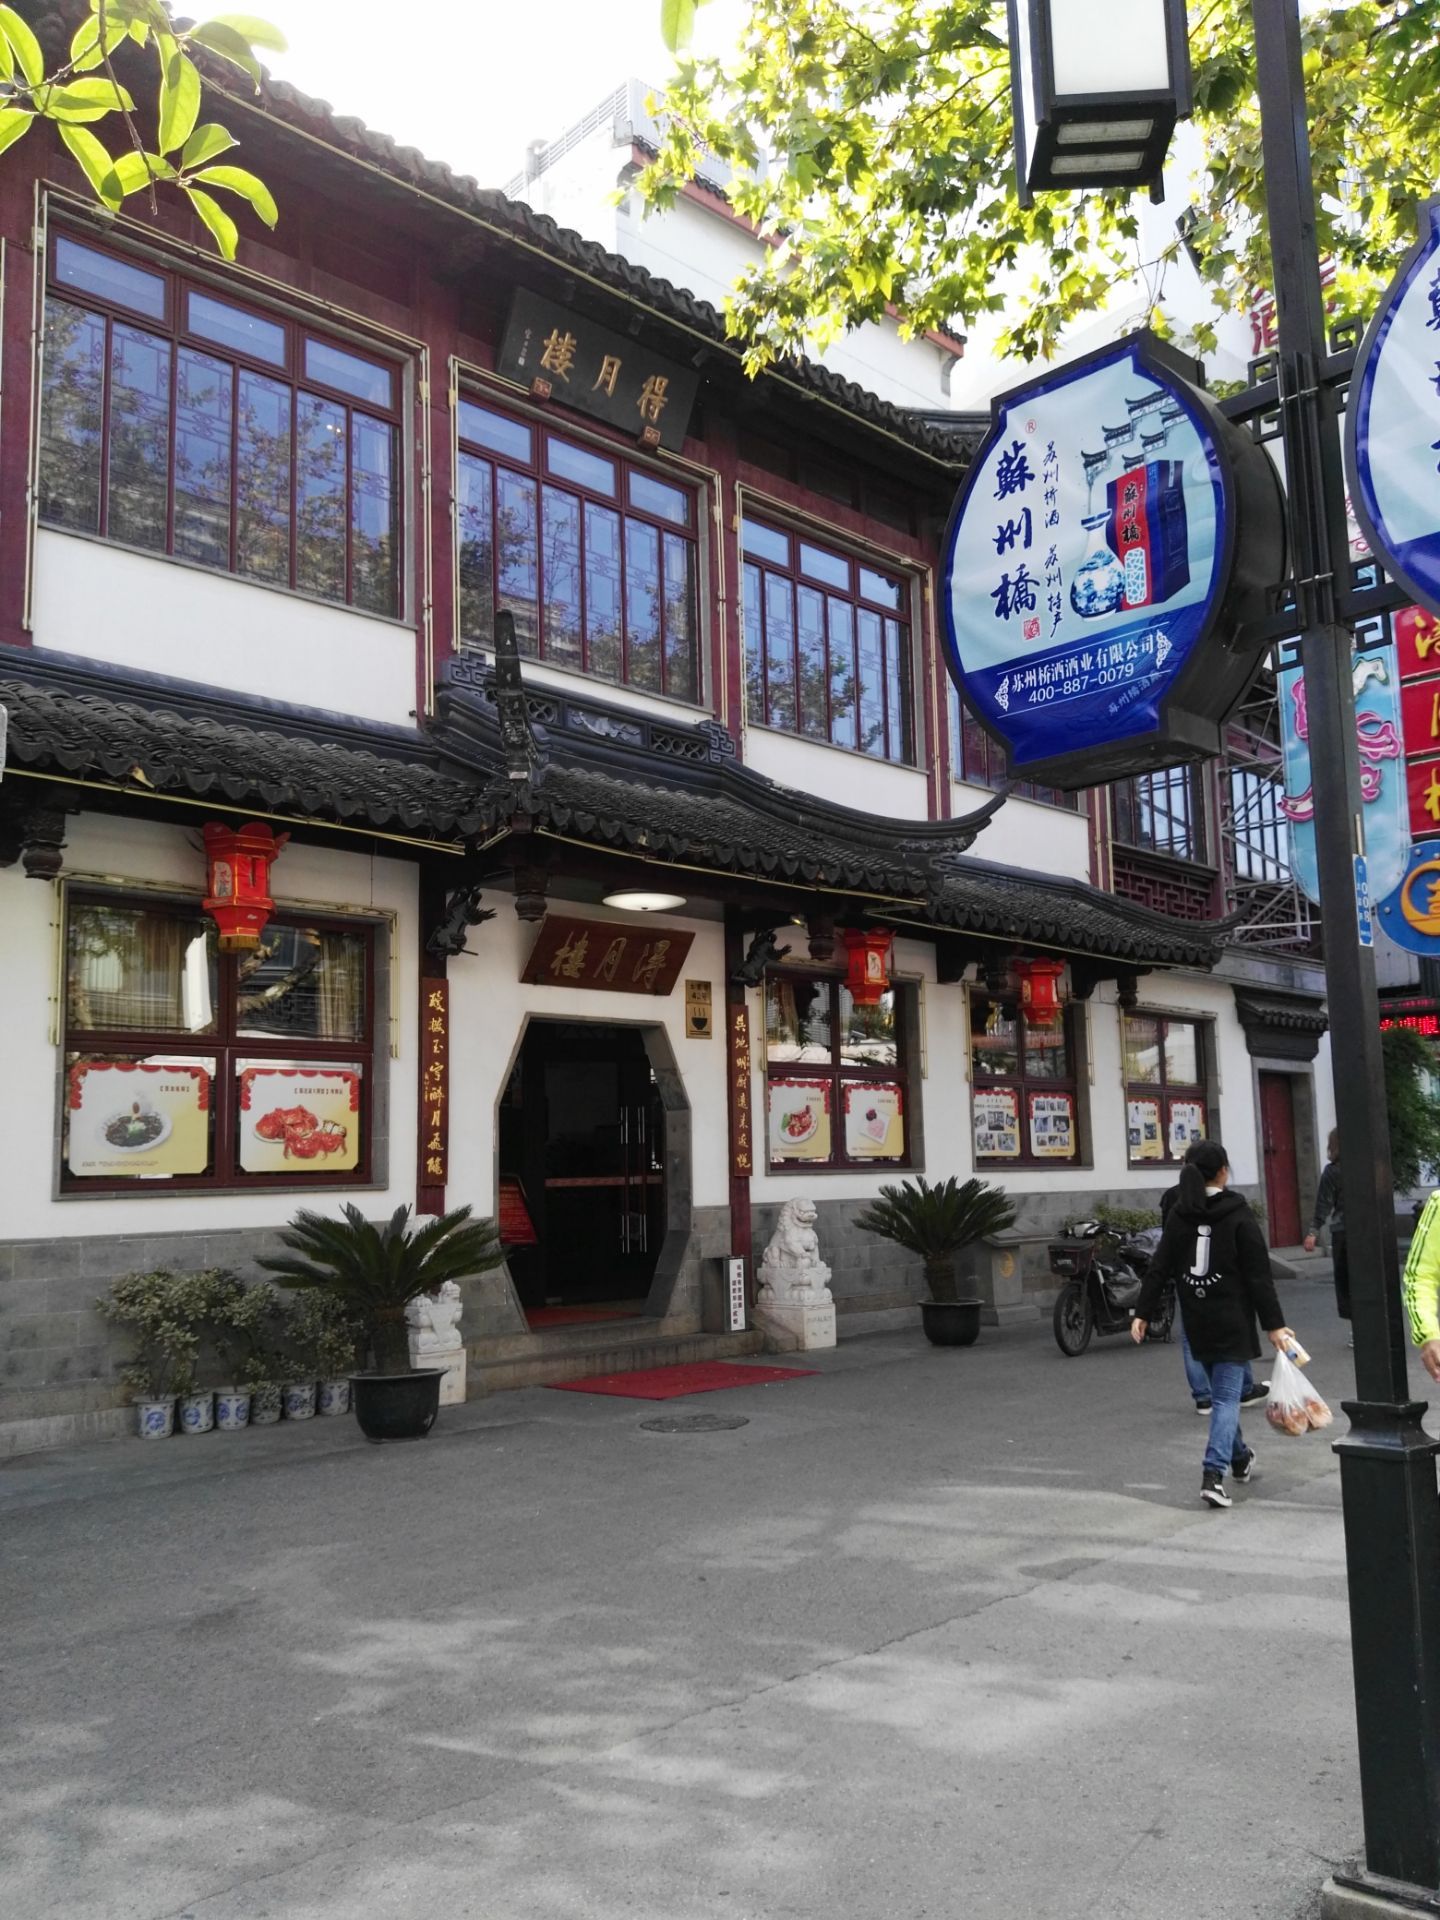 【携程美食林】苏州松鹤楼(观前店)餐馆,松鹤楼是目前苏州地区历史最